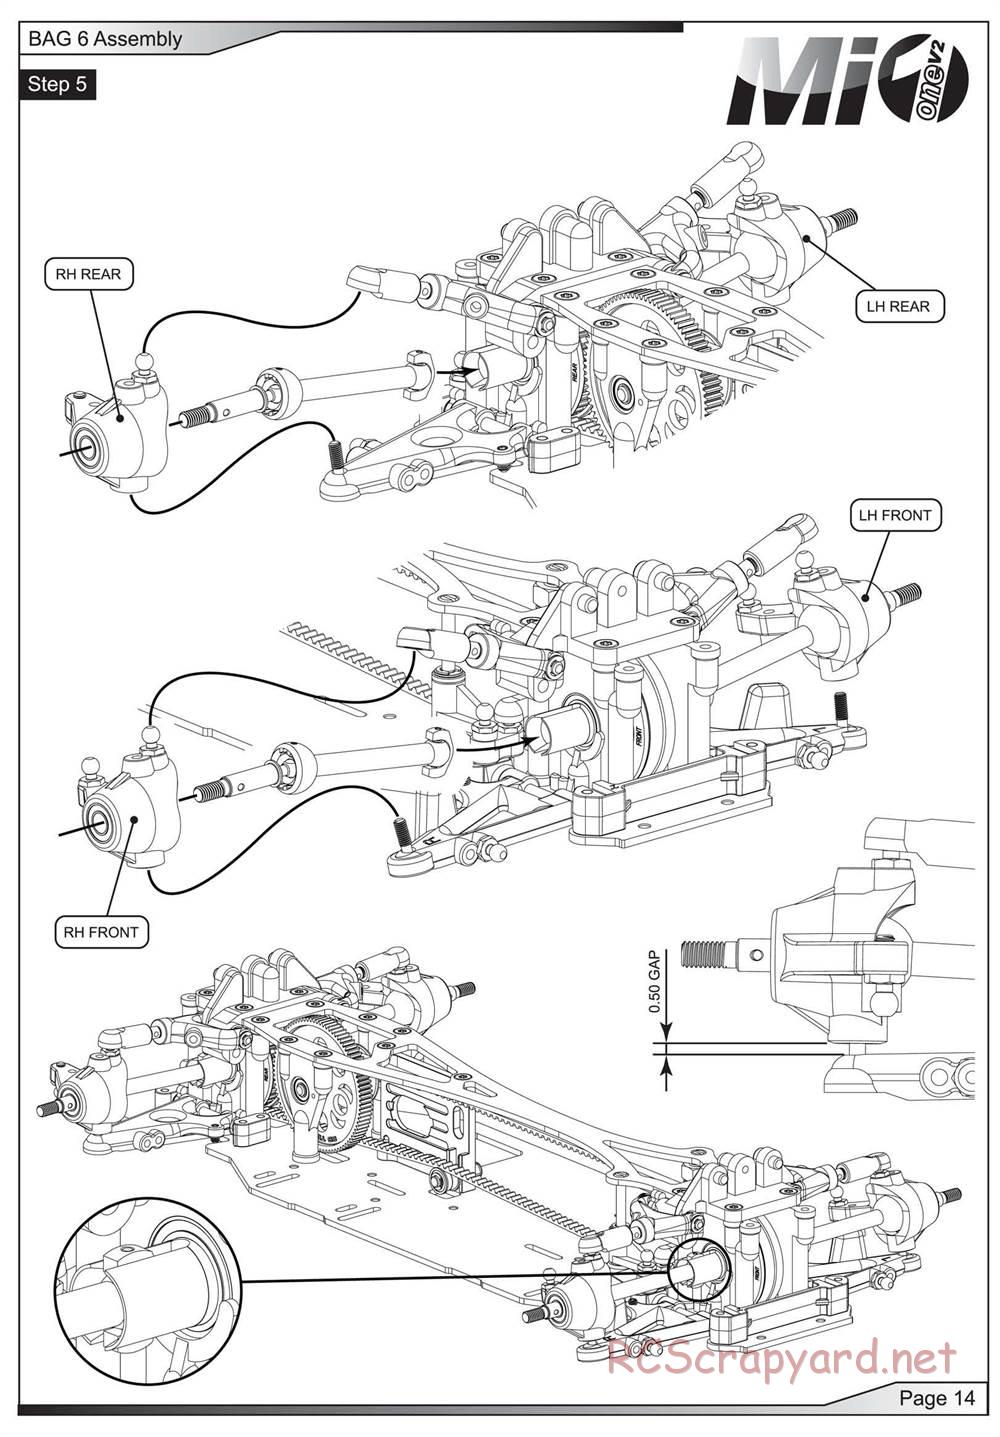 Schumacher - Mi1v2 - Manual - Page 15